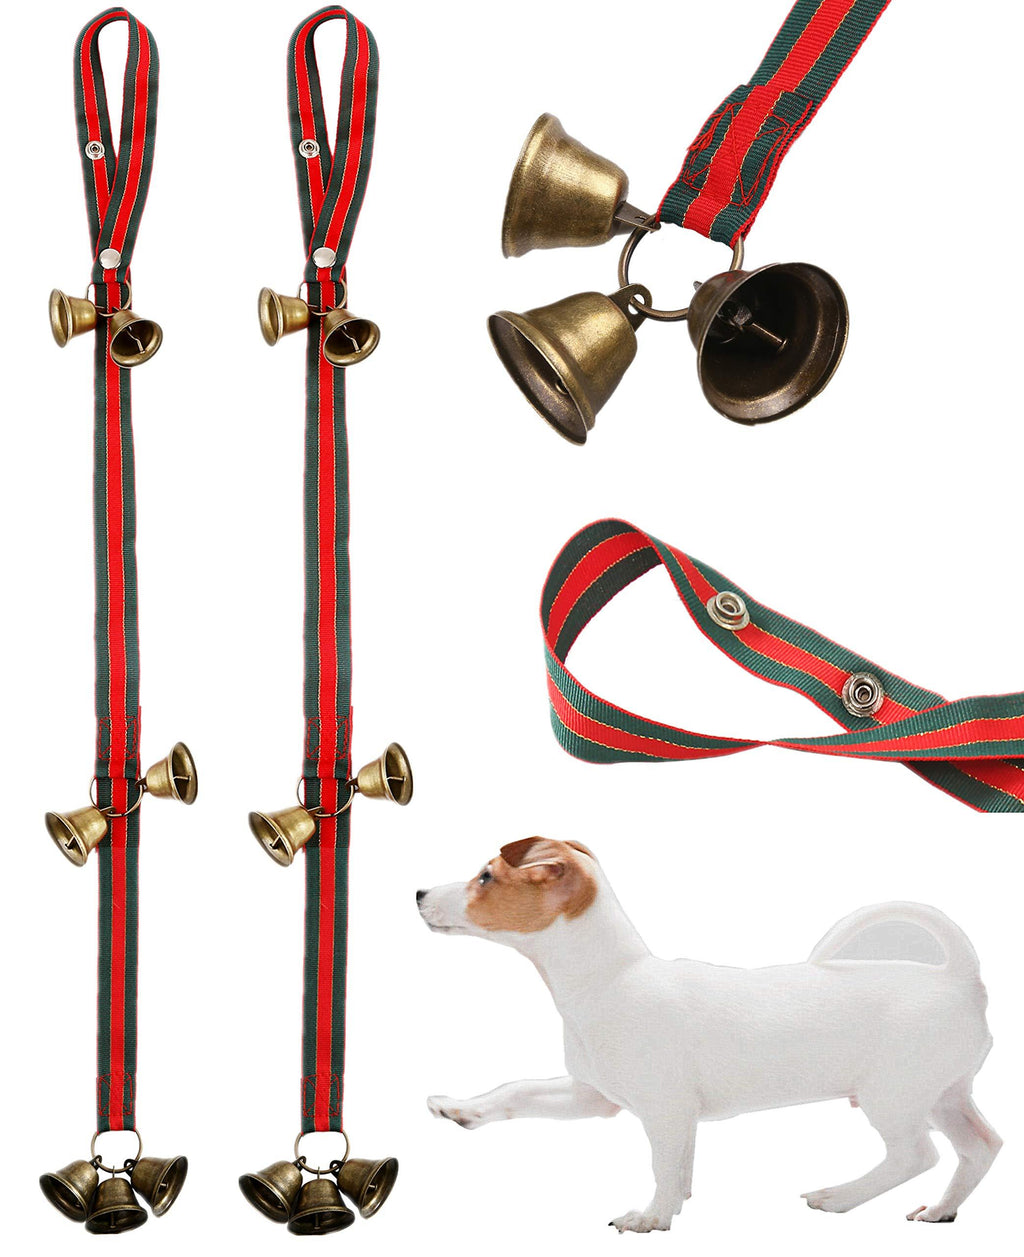 [Australia] - Christmas Dog Door Bells for Potty Training,2 Pack Doggie Doorbell 